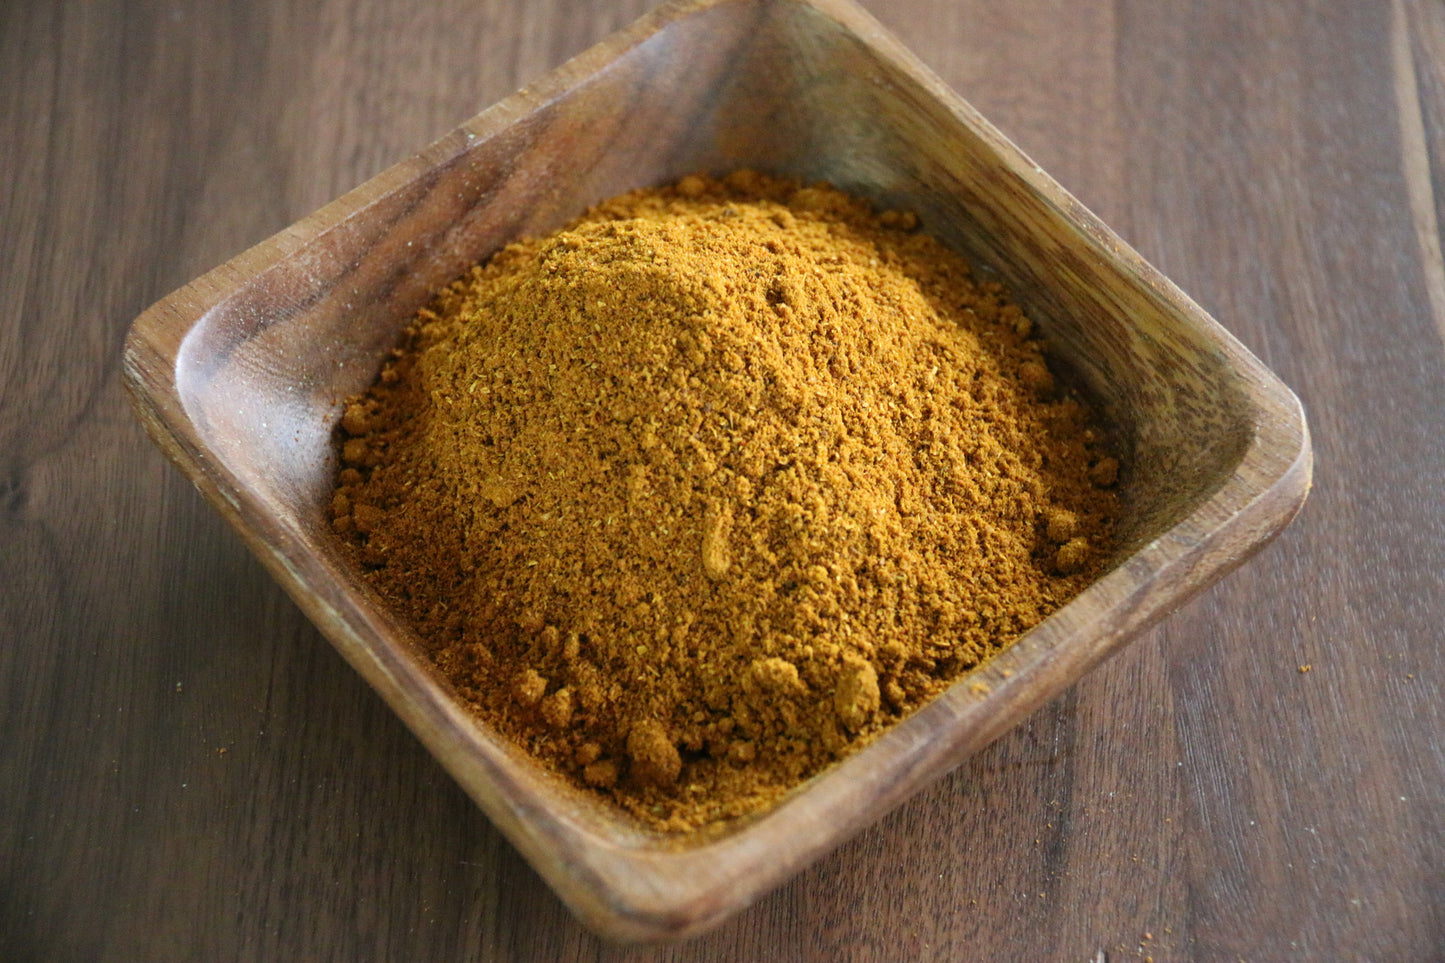 Malaysian Curry Powder